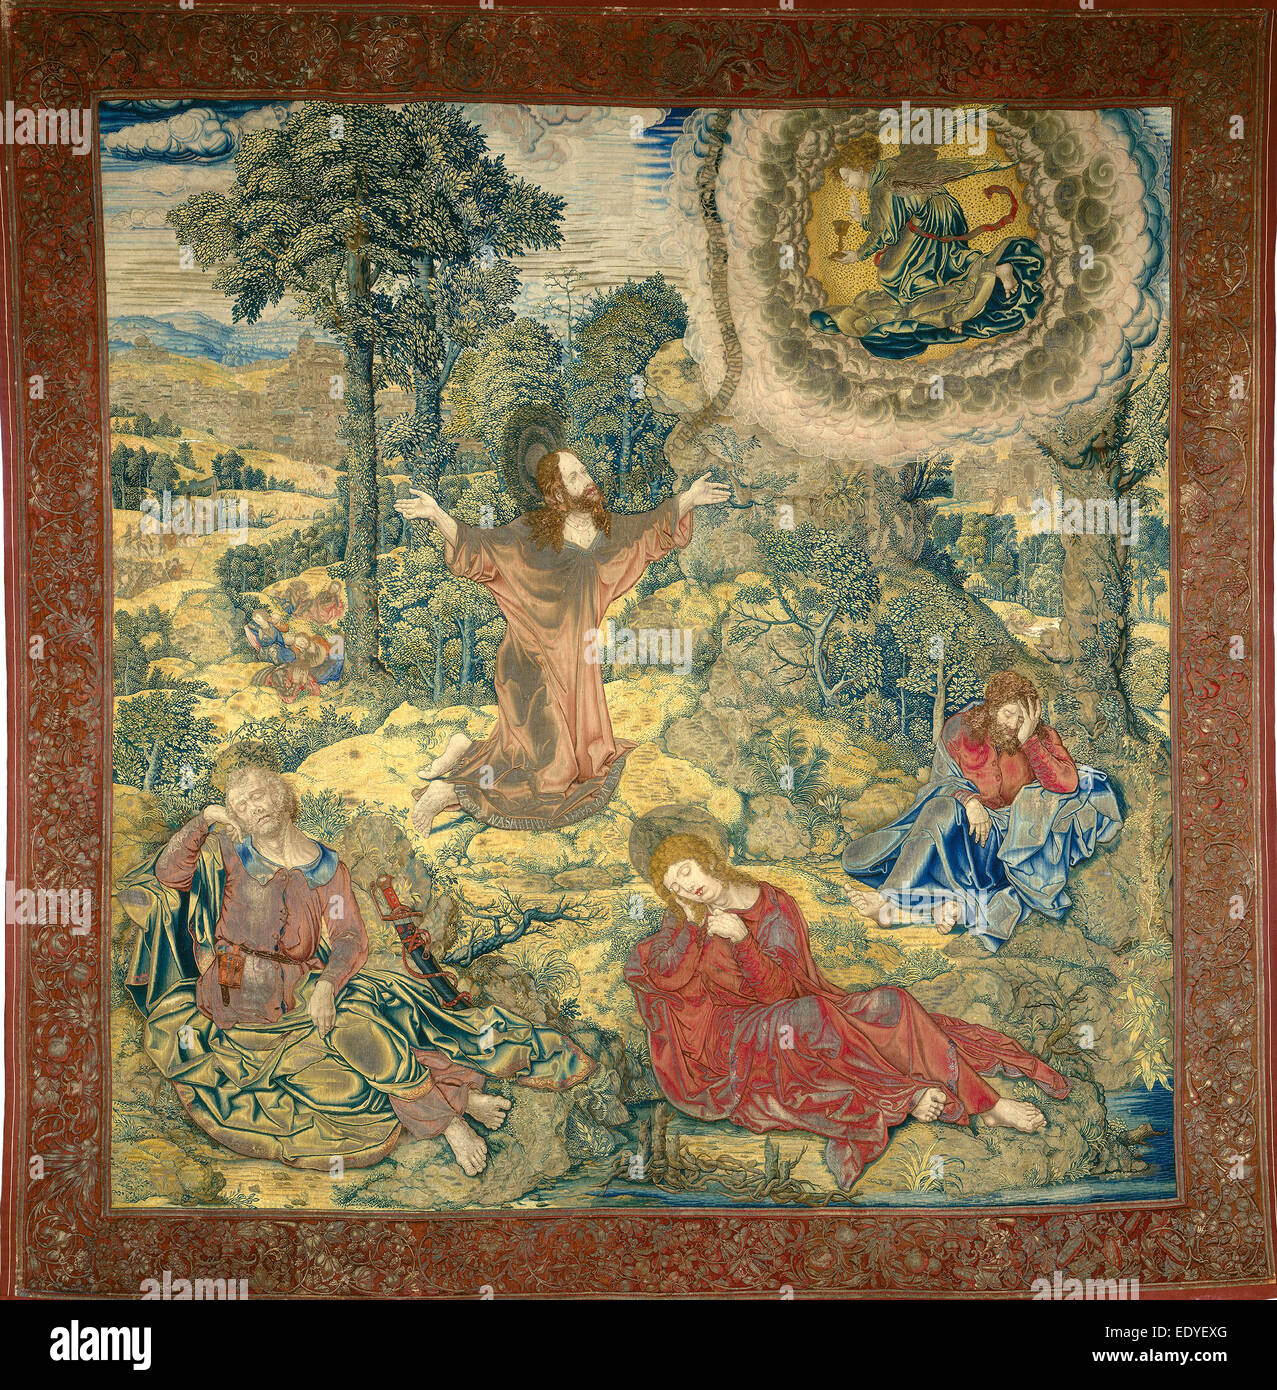 Pieter Pannemaker Je après Bernard van Orley, le jardin de Gethsémani, flamand, active c. 1517-1535, ch. La tapisserie, 1520 Banque D'Images